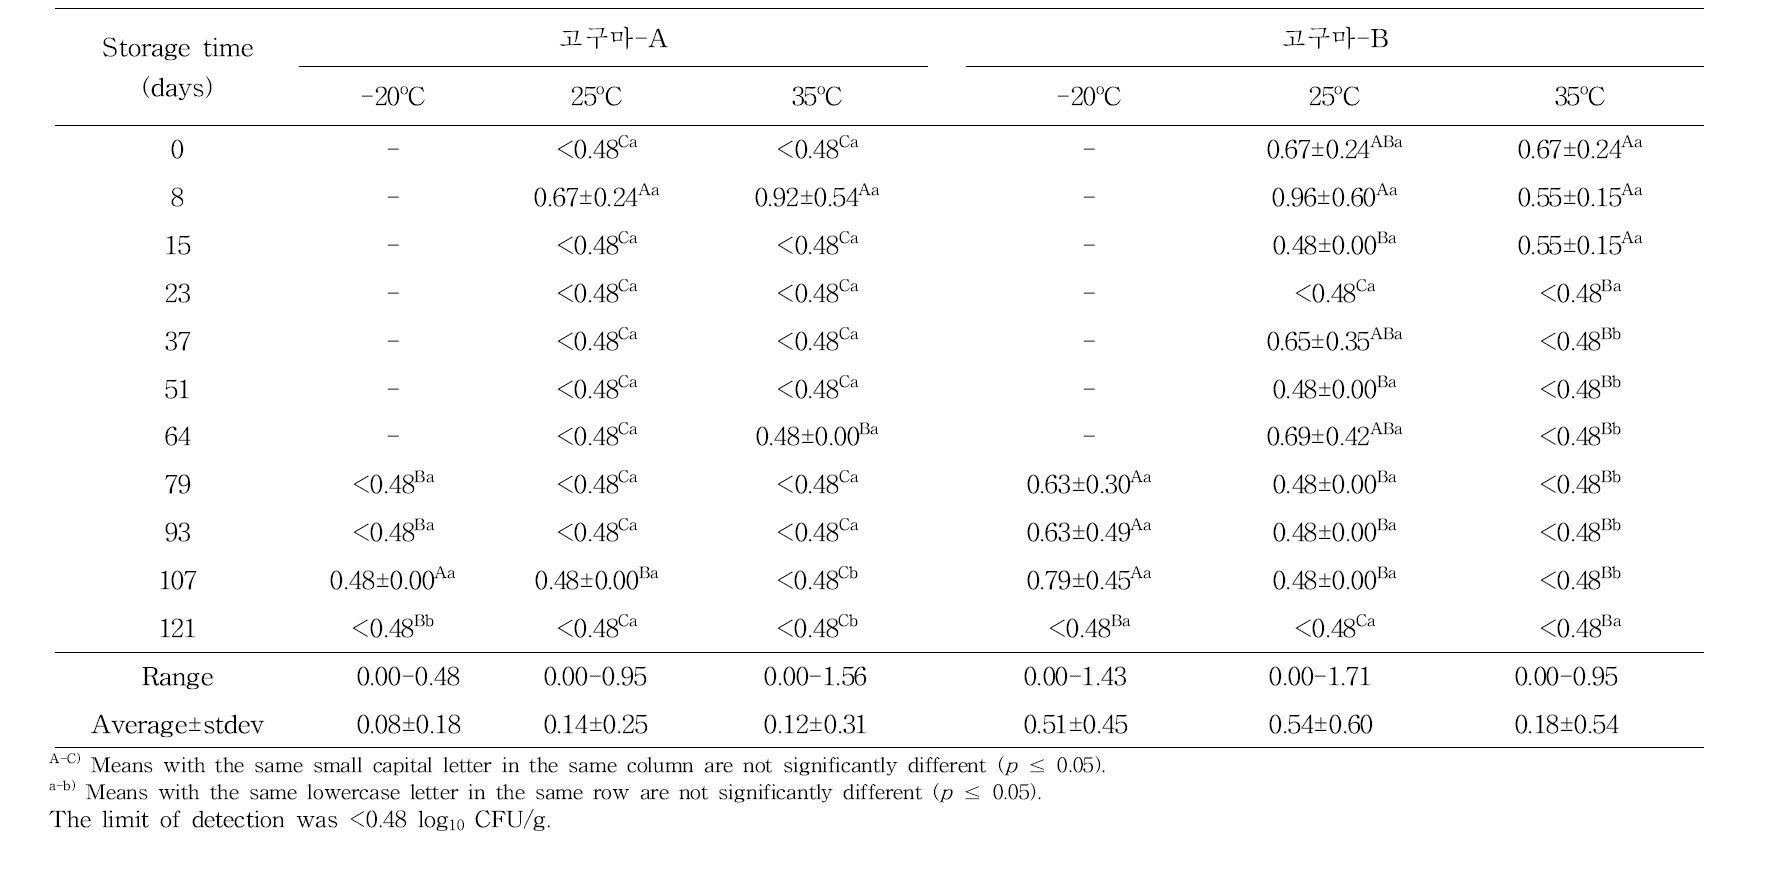 저장온도에 따른 저장기간 동안 고구마말랭이의 곰팡이수(log10 CFU/g) 변화